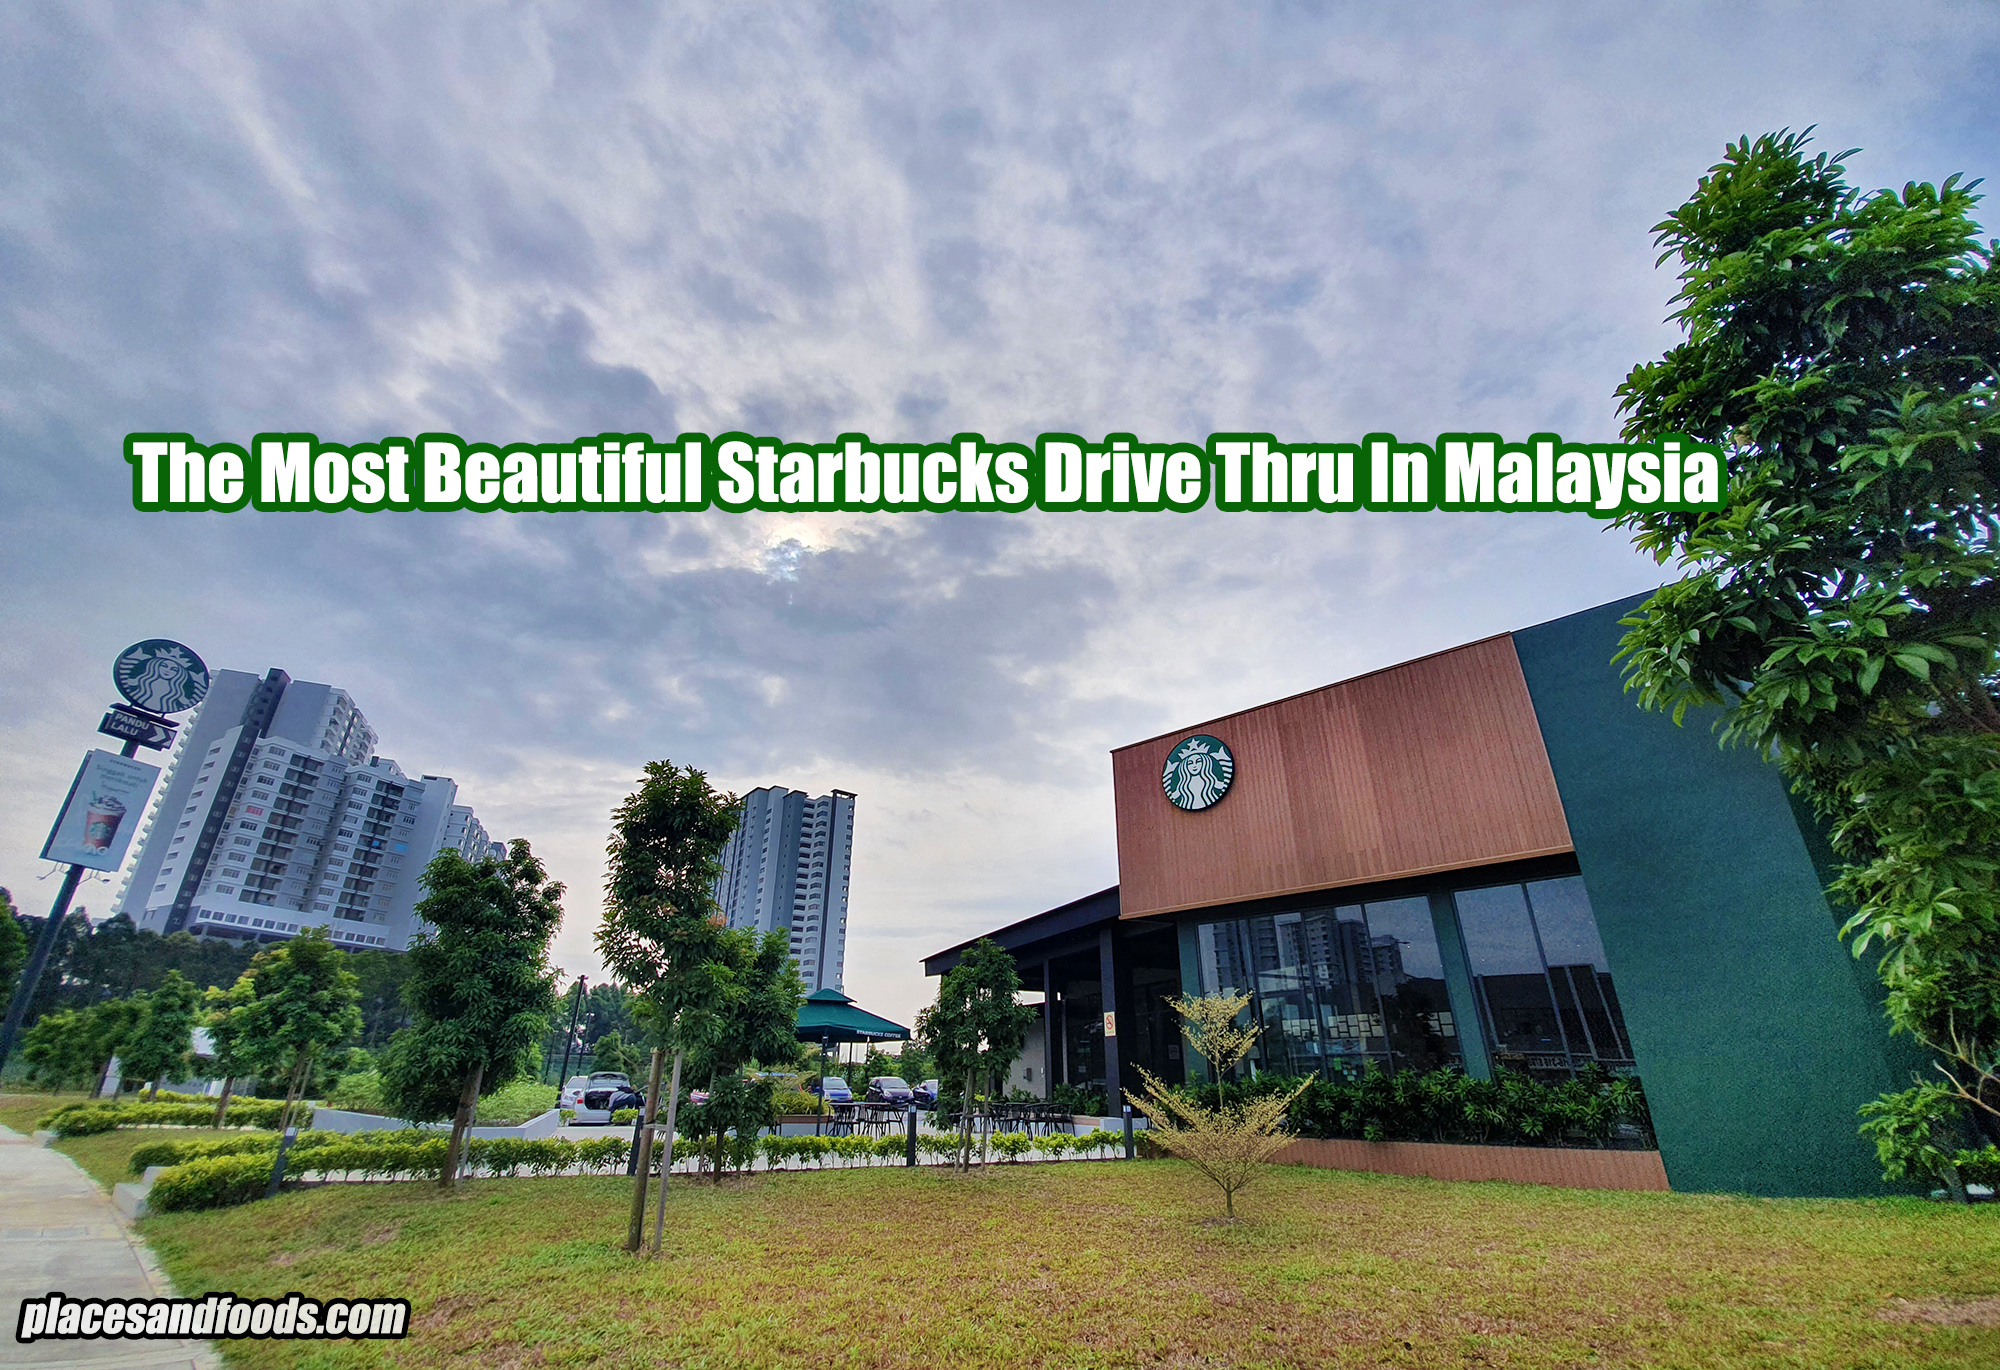 The Most Beautiful Starbucks Drive Thru In Malaysia